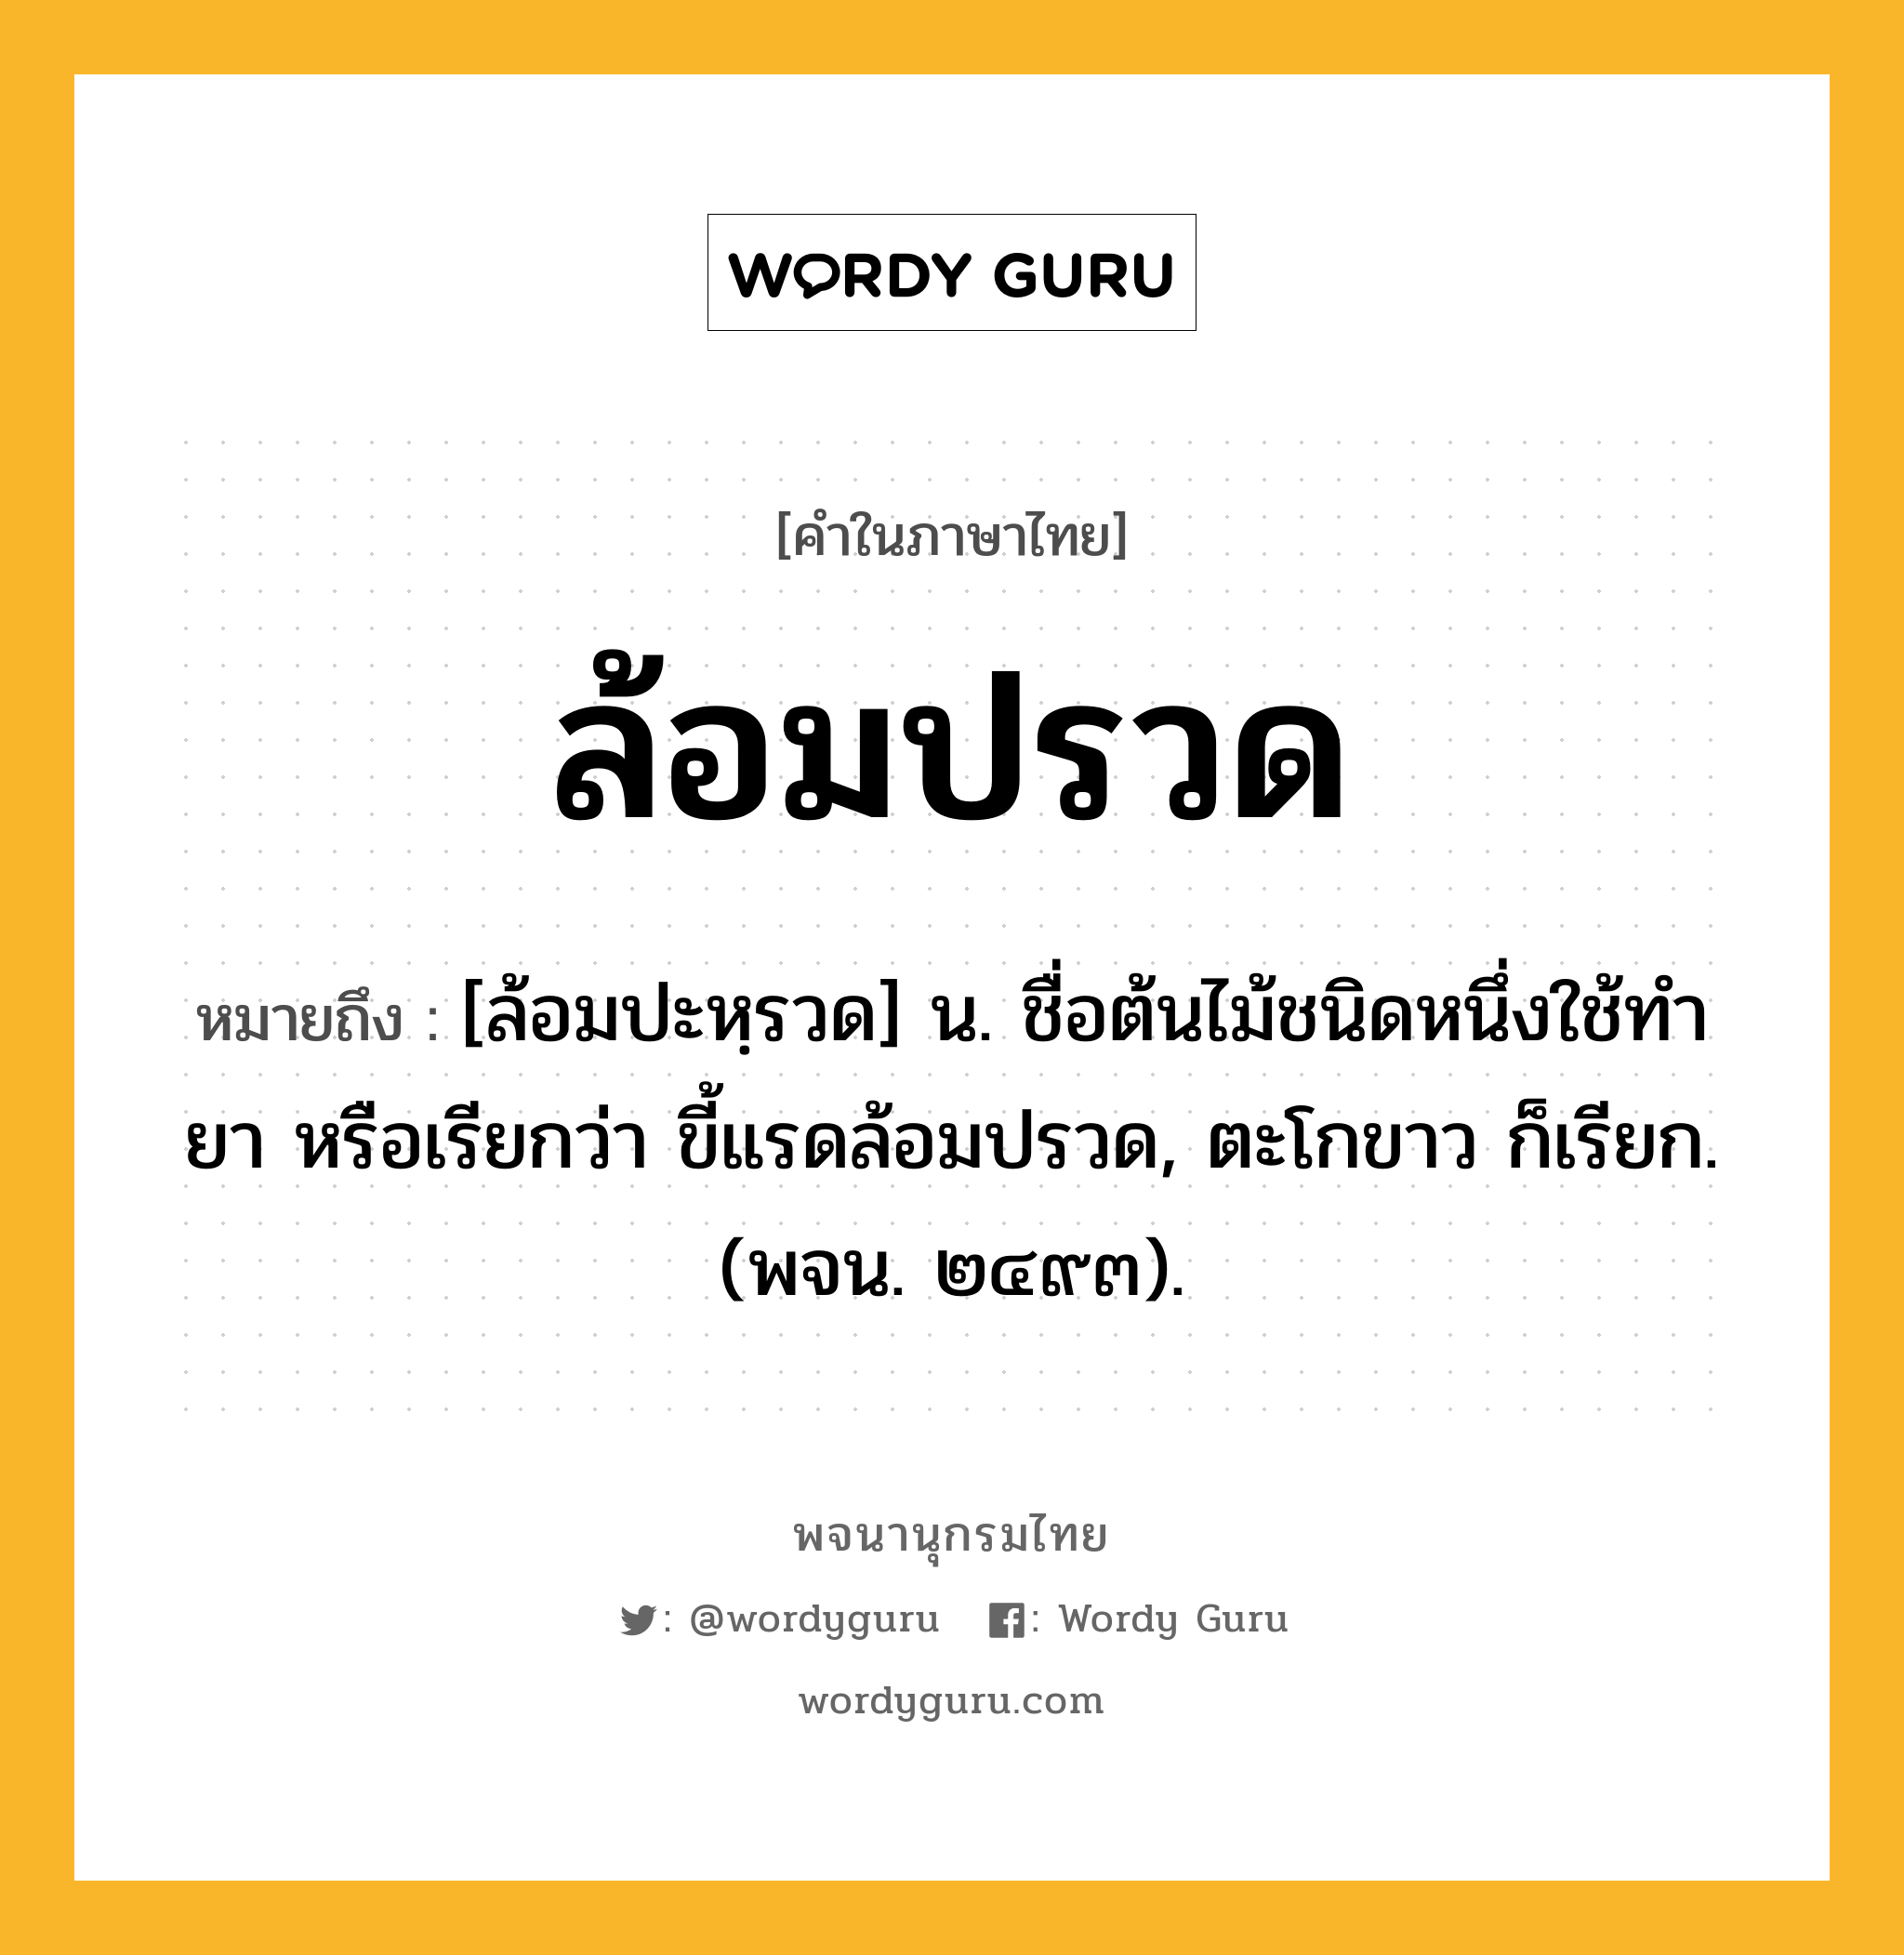 ล้อมปรวด ความหมาย หมายถึงอะไร?, คำในภาษาไทย ล้อมปรวด หมายถึง [ล้อมปะหฺรวด] น. ชื่อต้นไม้ชนิดหนึ่งใช้ทํายา หรือเรียกว่า ขี้แรดล้อมปรวด, ตะโกขาว ก็เรียก. (พจน. ๒๔๙๓).